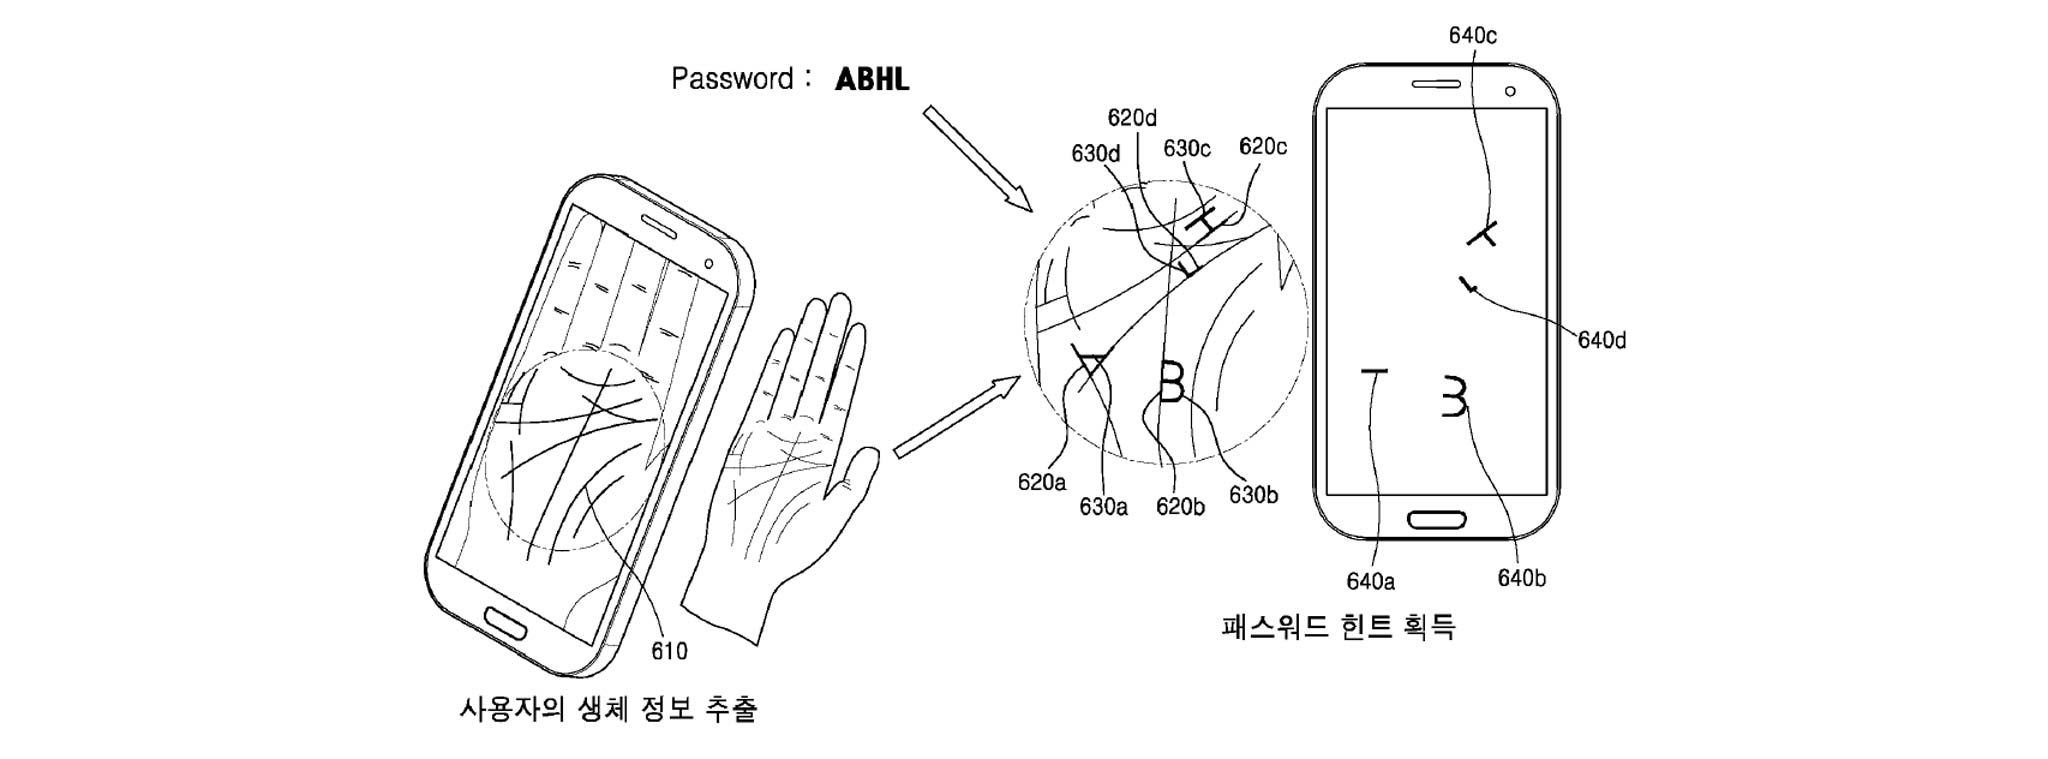 Samsung nhận bằng sáng chế dùng chỉ tay để "bói" mật khẩu